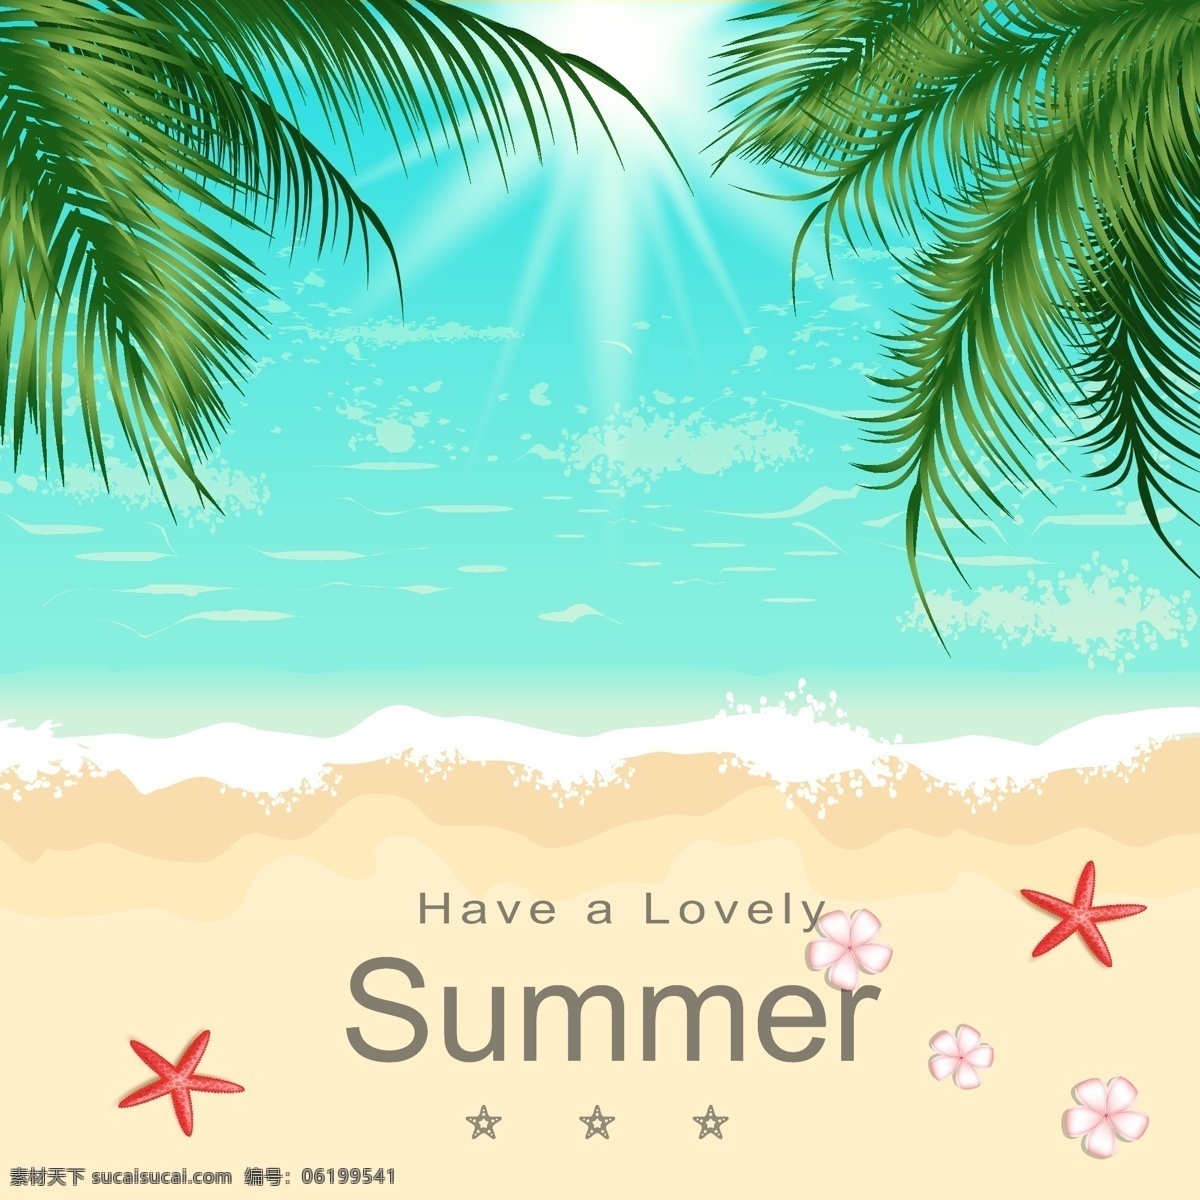 夏日风景 地中海风格 东南亚风格 椰子树 白色沙滩 蓝色海洋 自然风光 蓝天白云 卡通设计